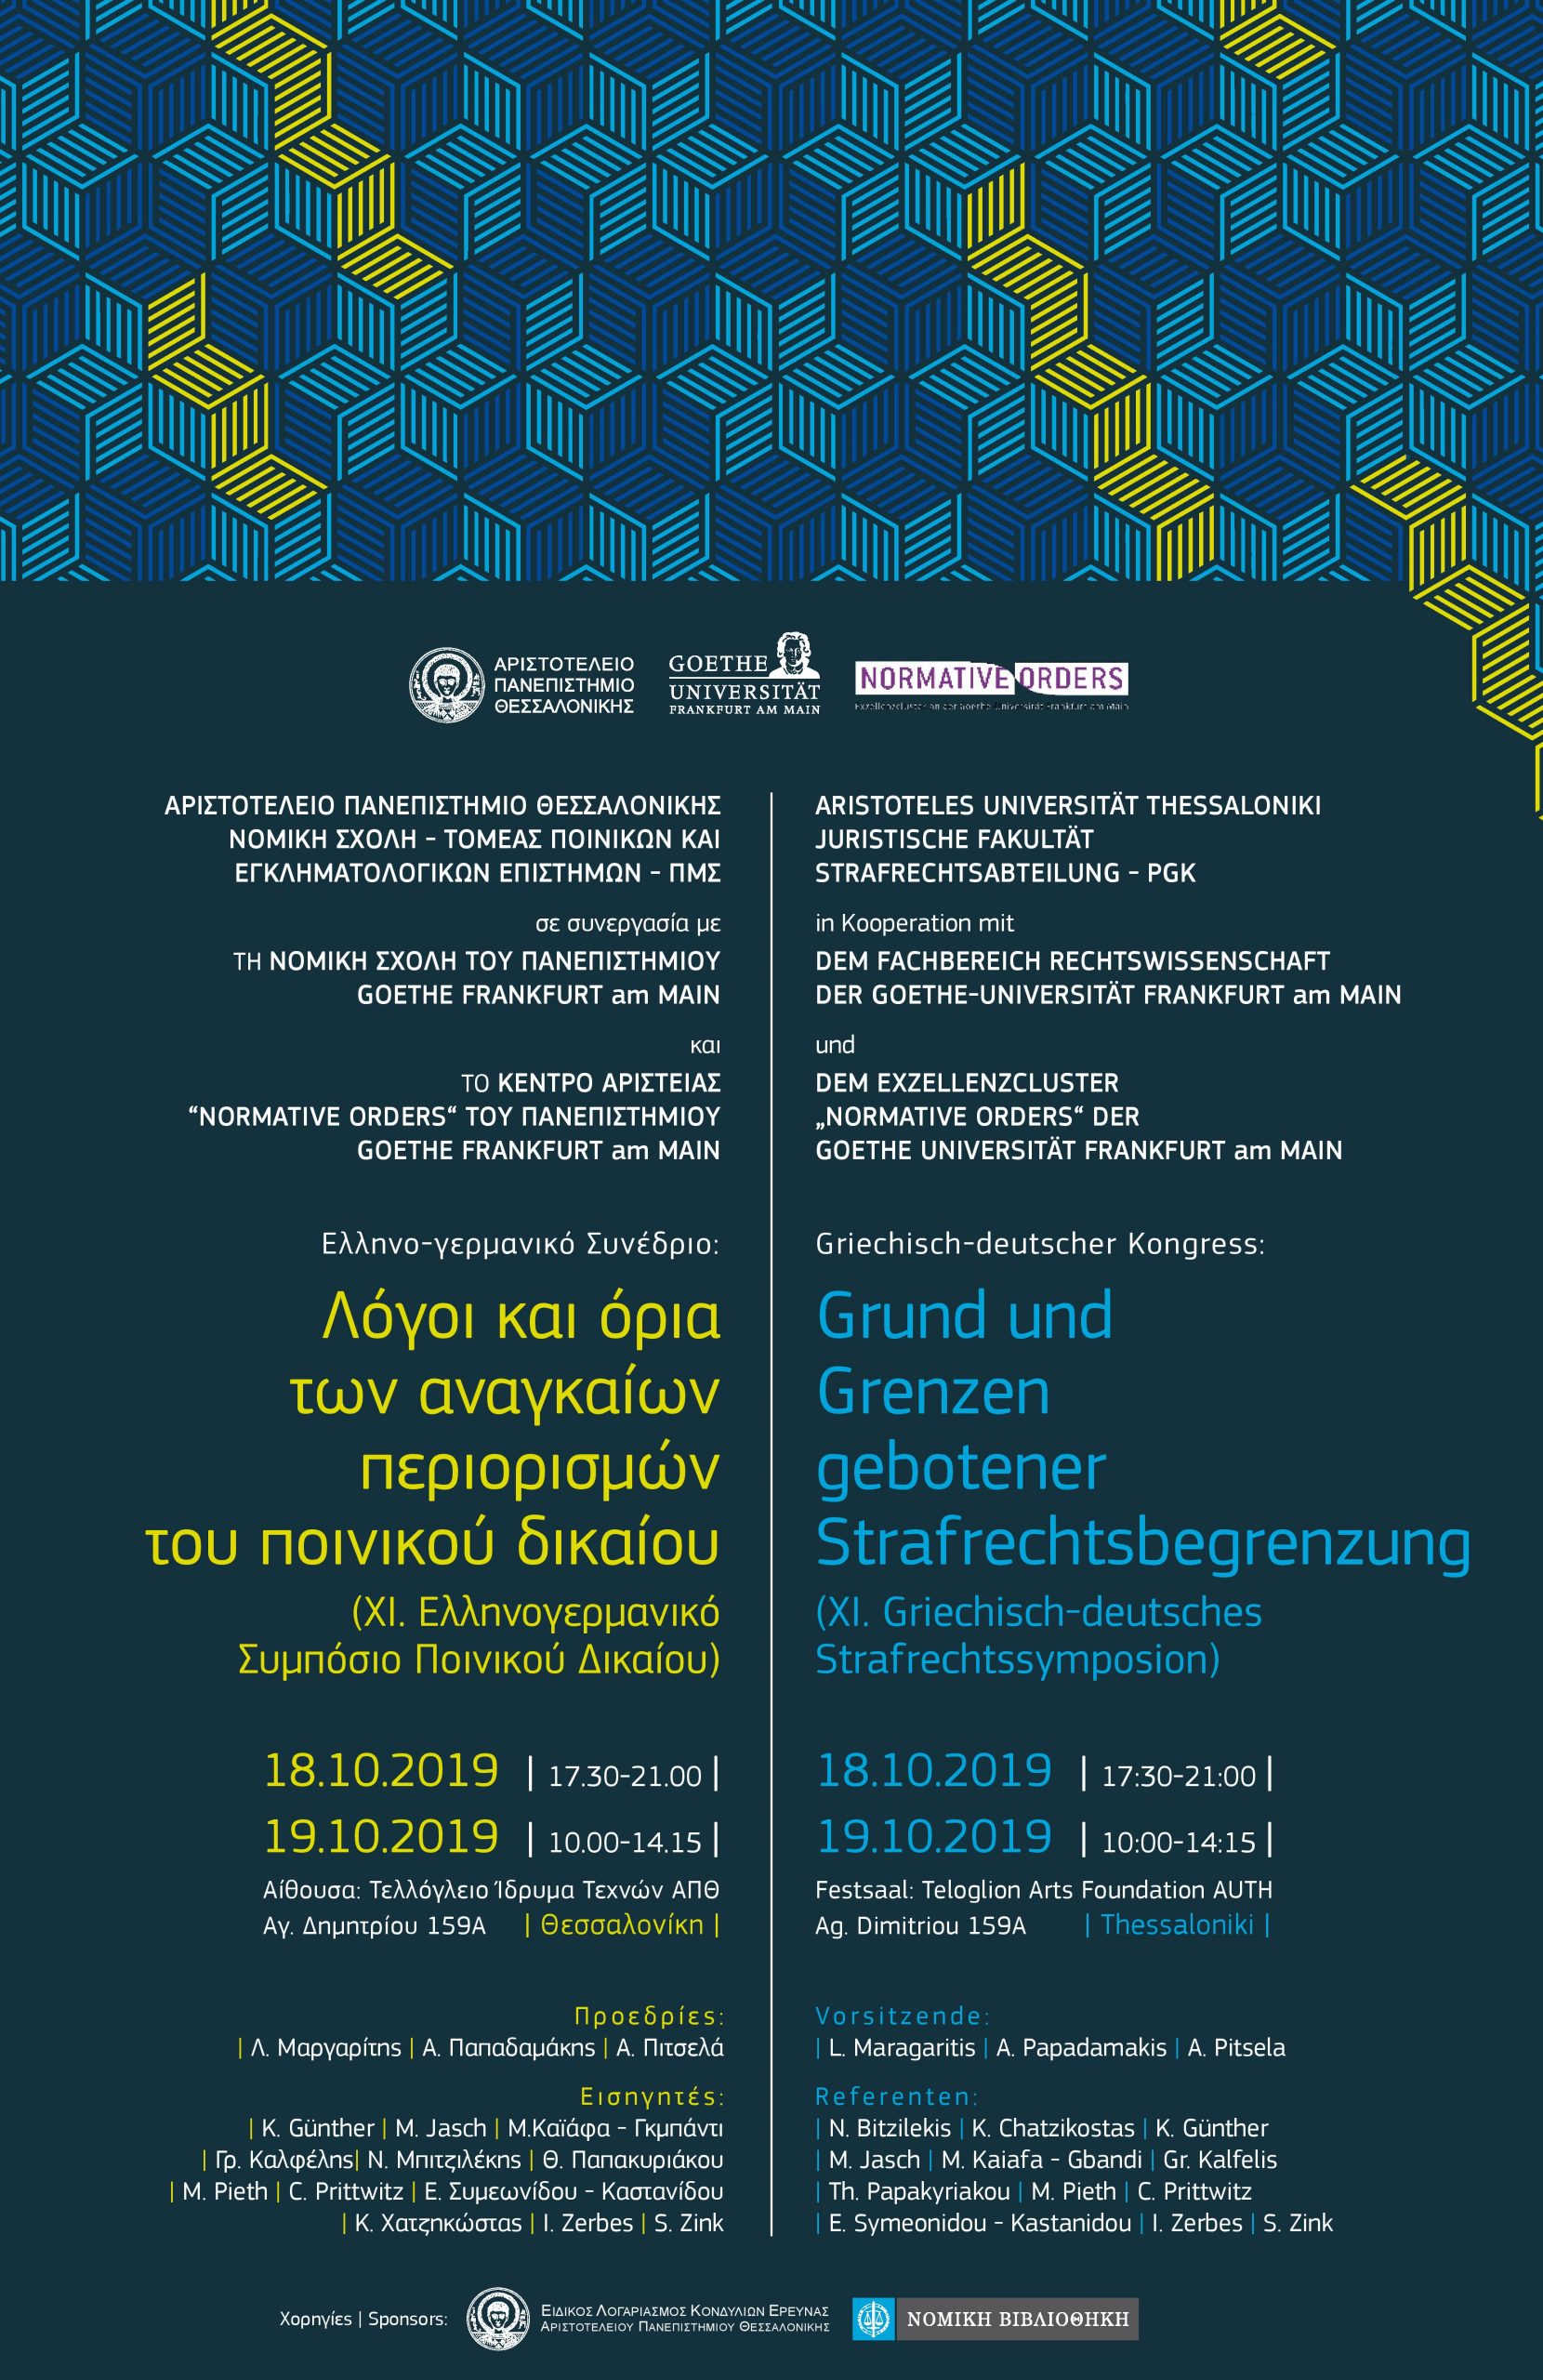 Αφίσα Ελληνο-γερμανικού Συνεδρίου